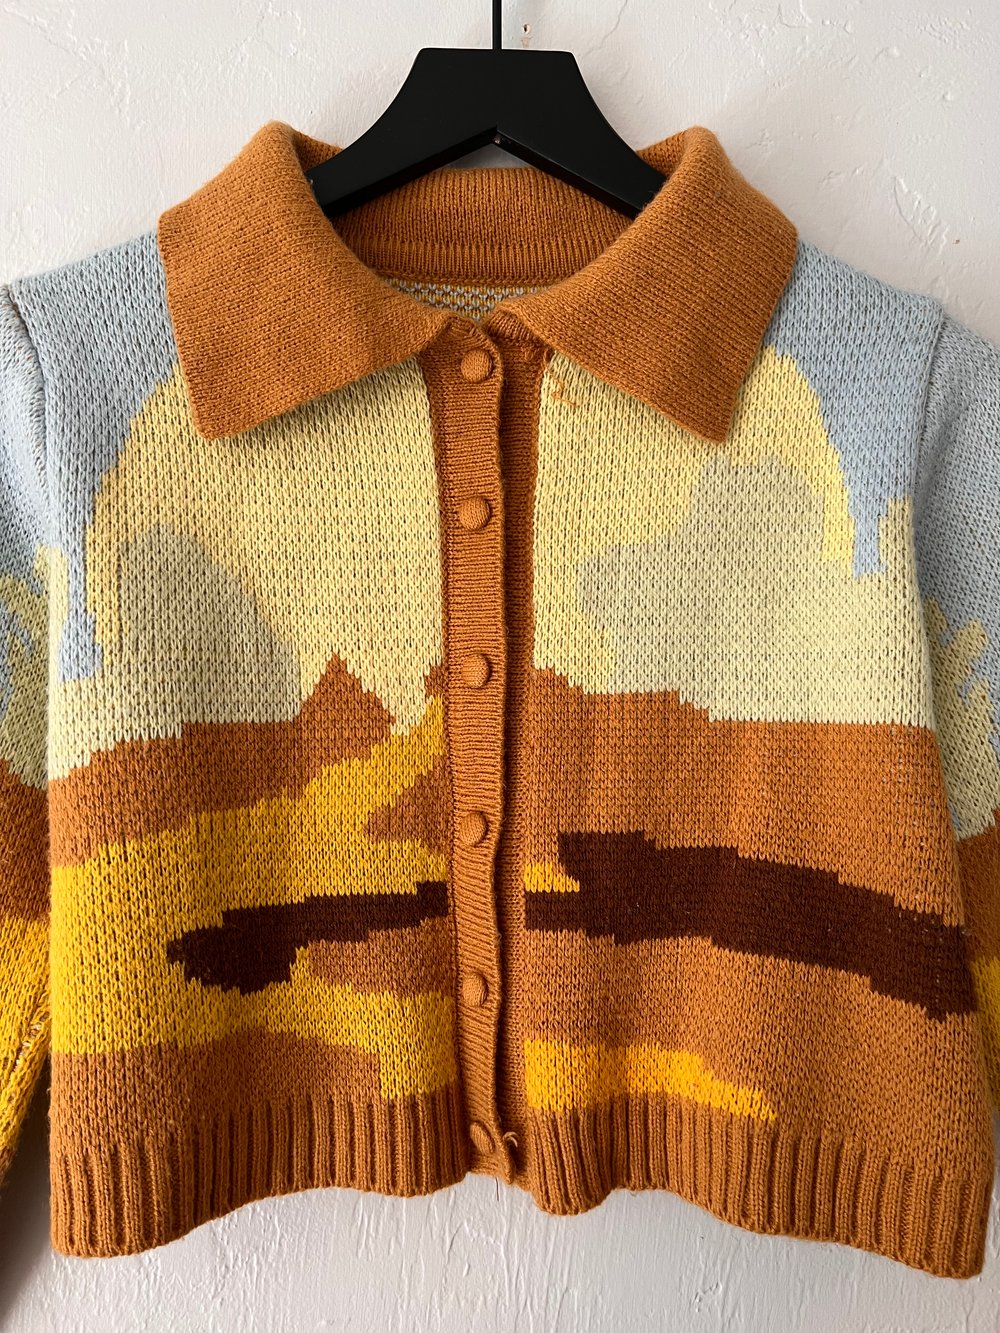 Vintage Cropped Desert Cardigan (XS)